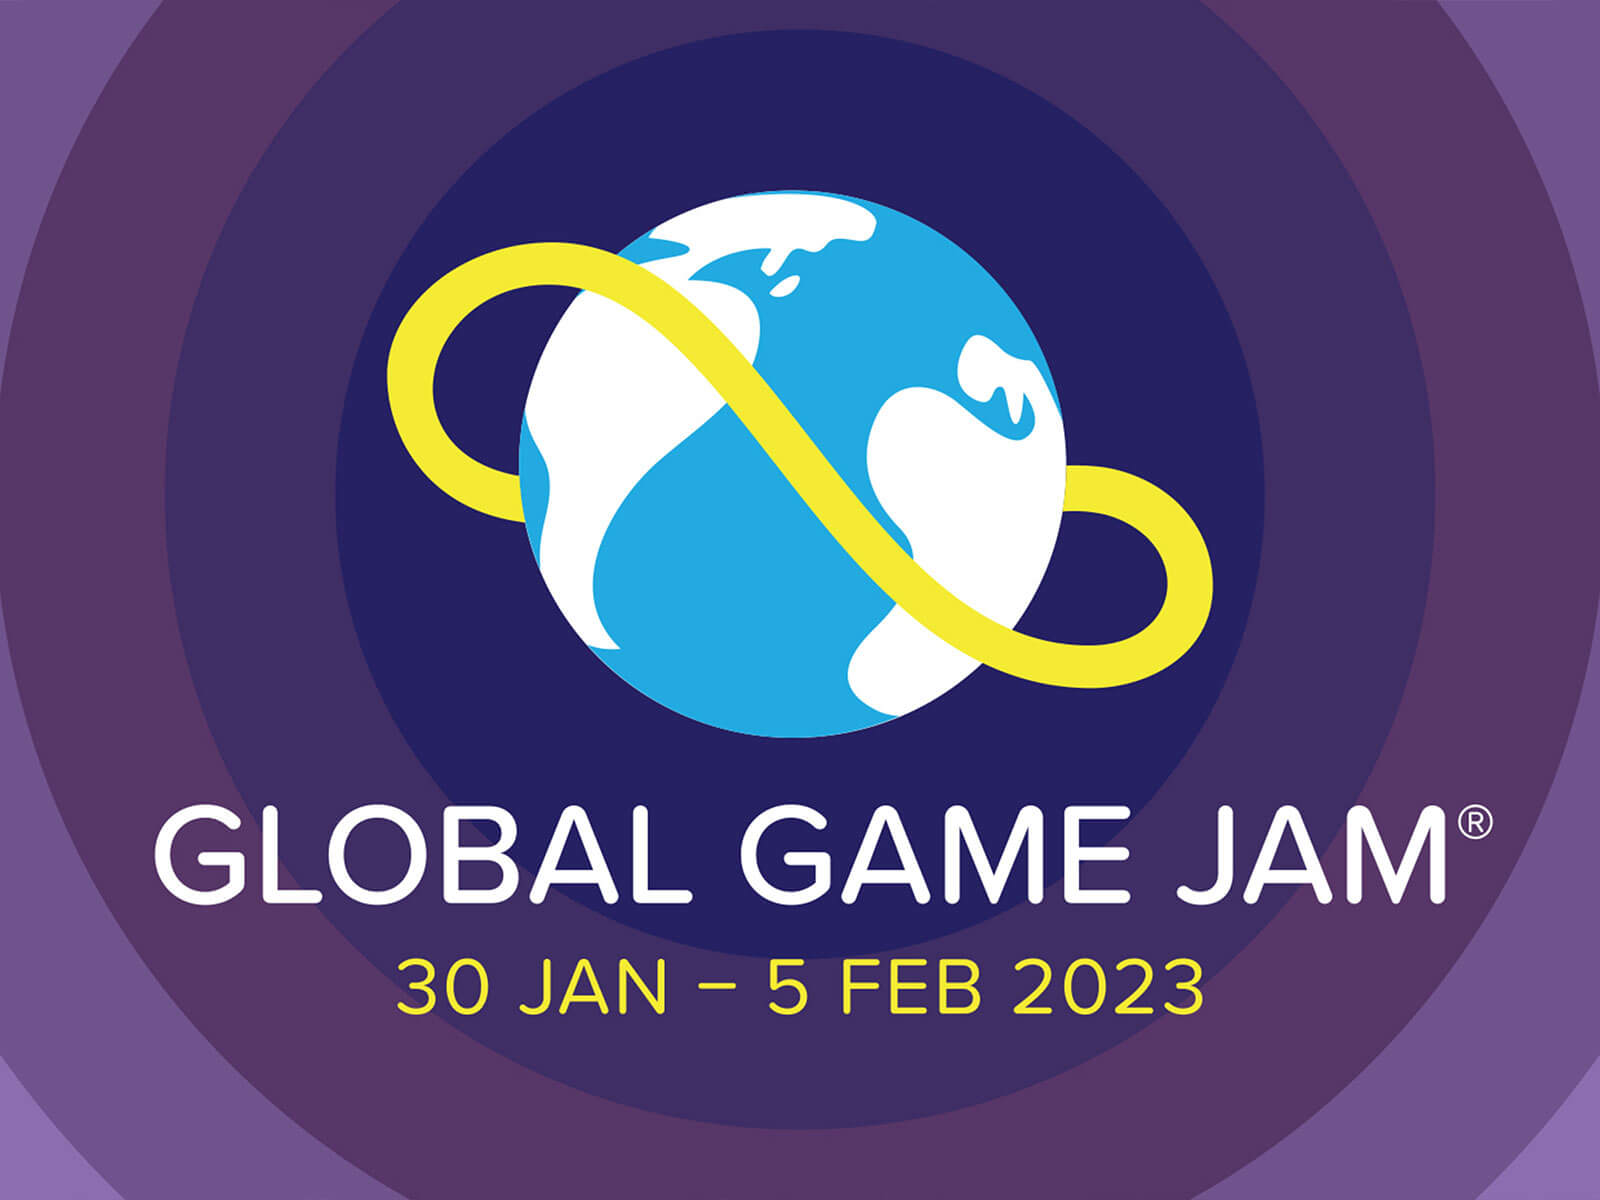 Logotipo de la Global Game Jam con sus fechas debajo.